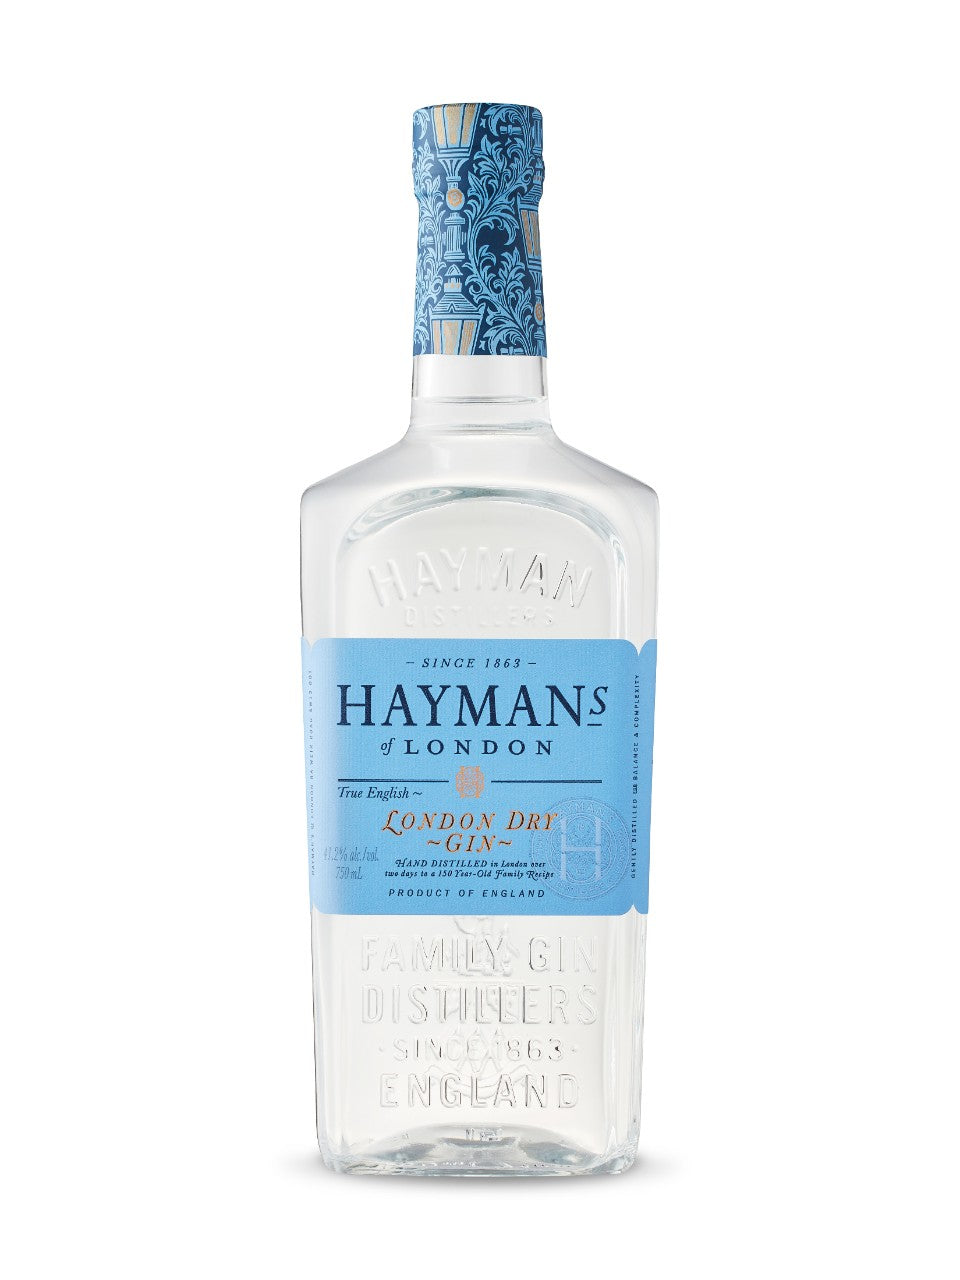 Hayman's London Dry Gin 750 mL bottle